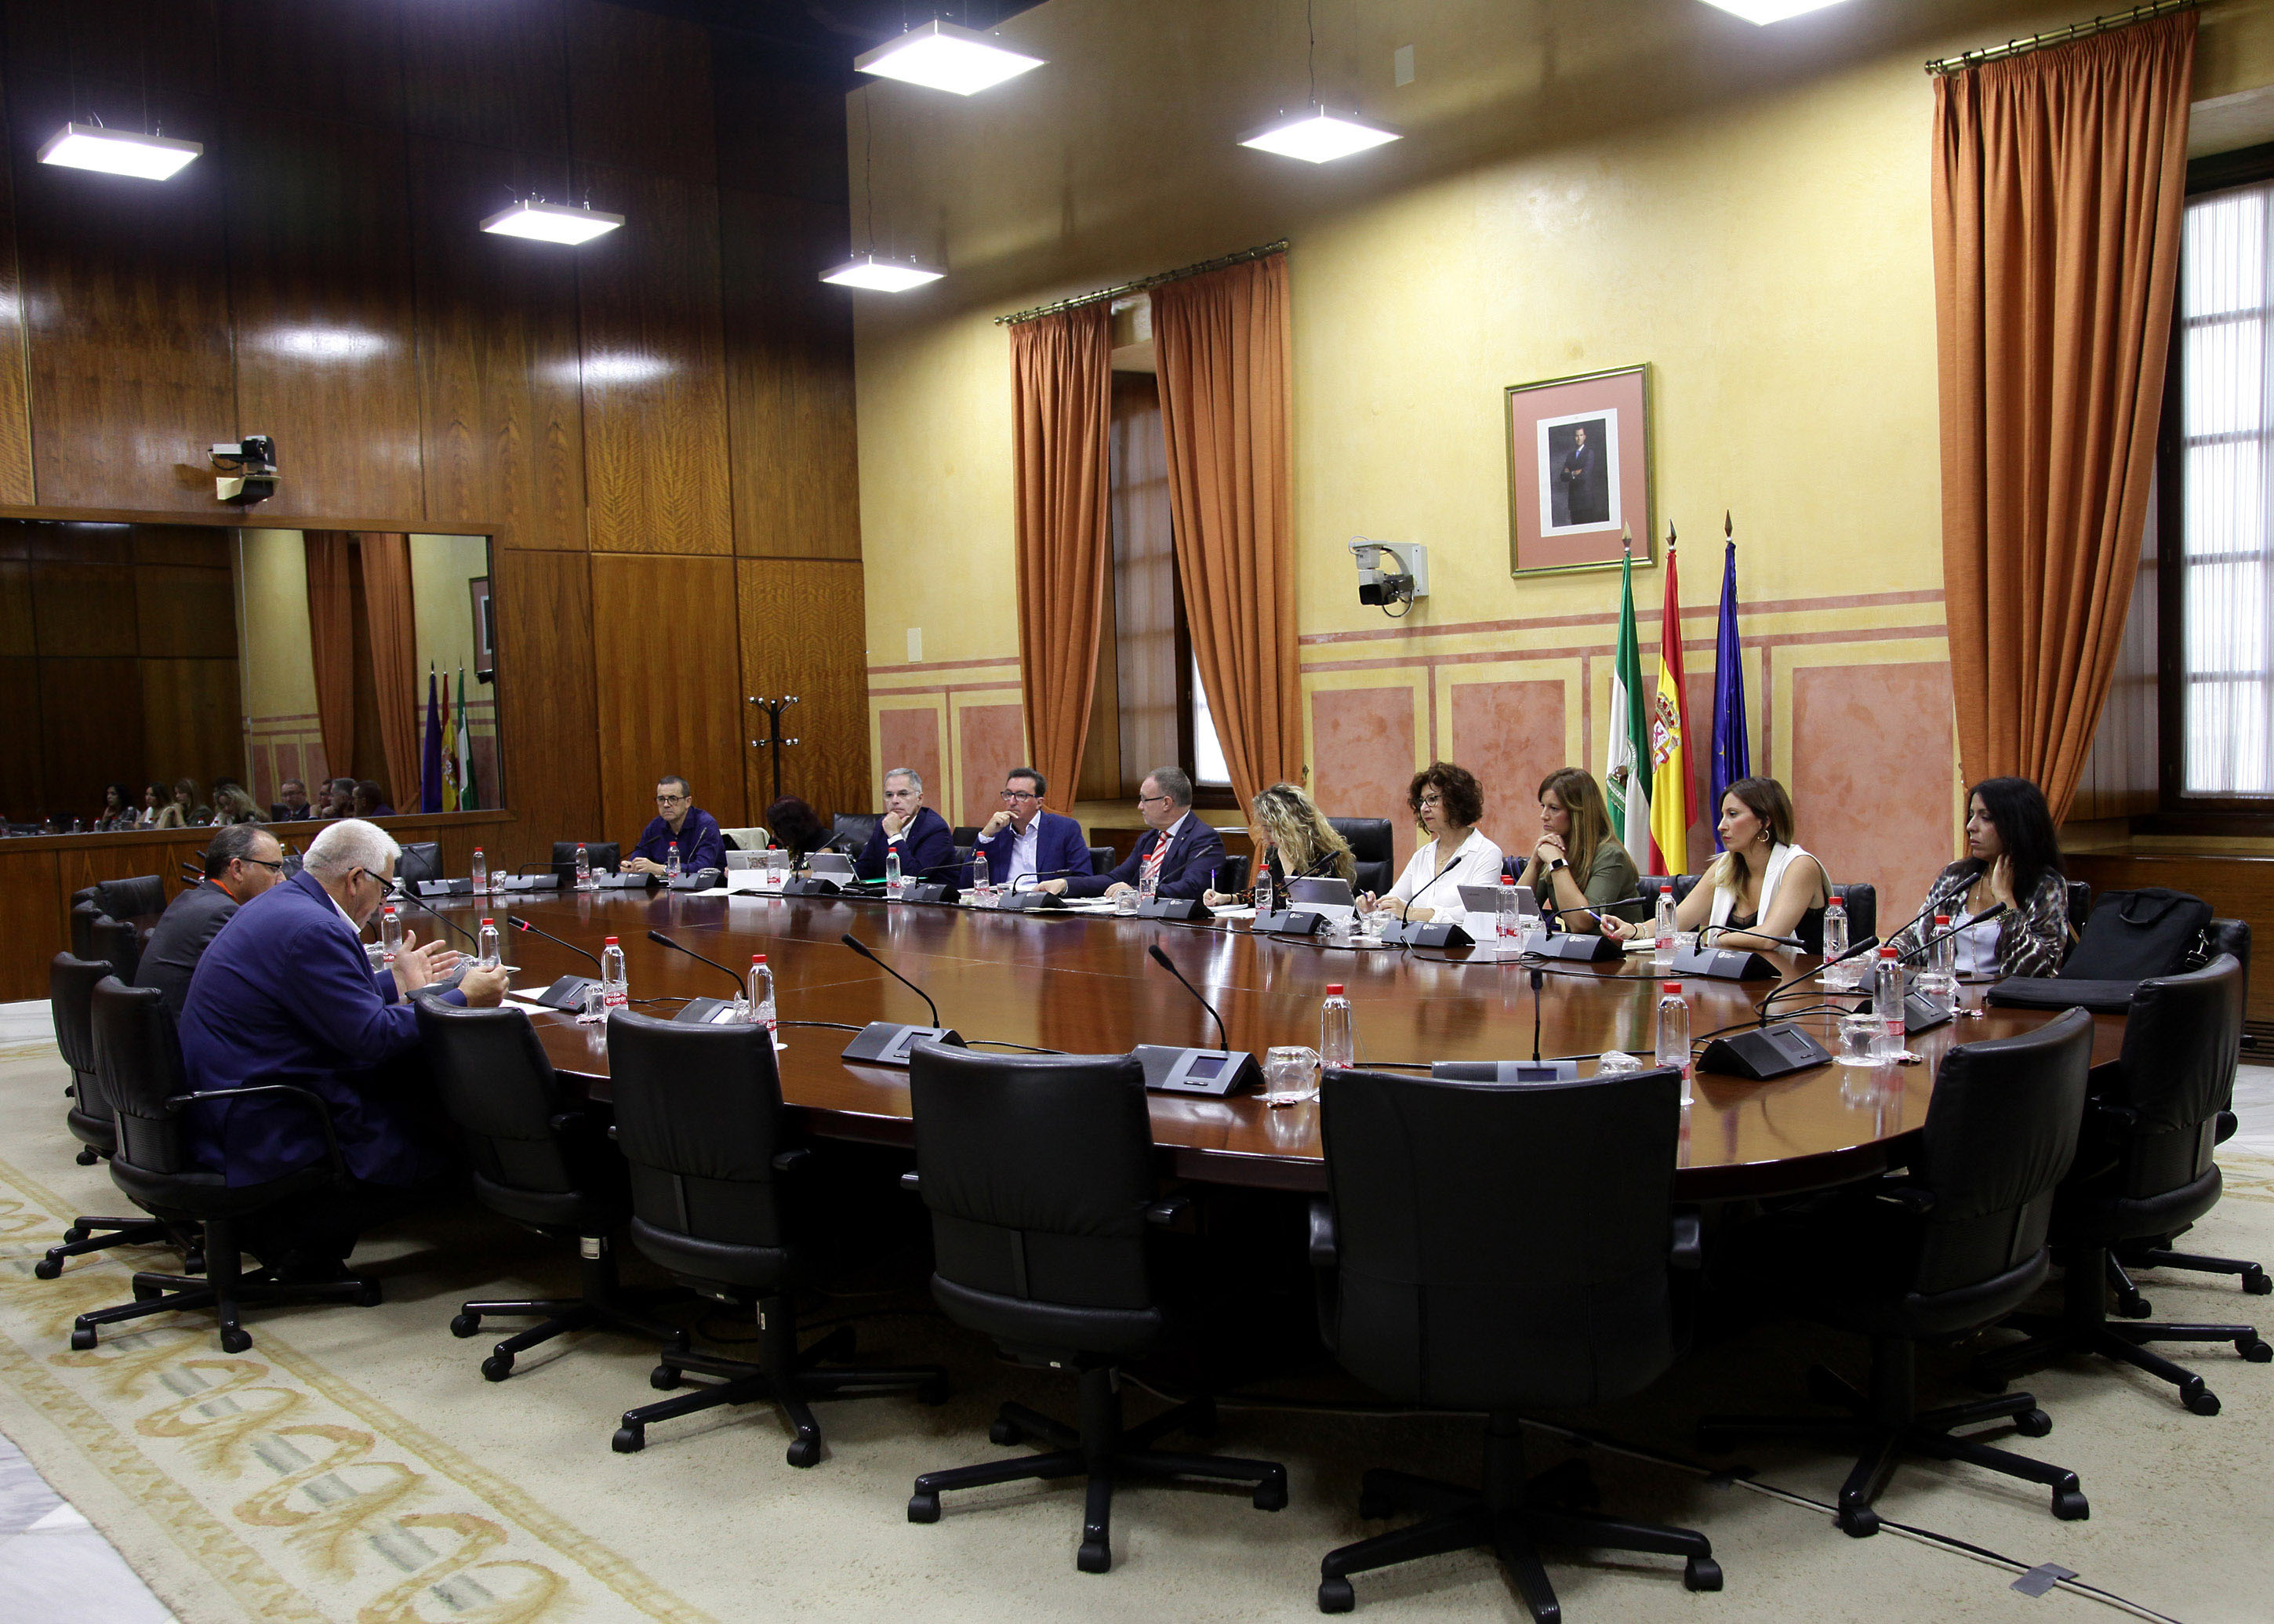  La Comisión de Agricultura, Pesca y Desarrollo Rural asiste a las comparecencias de agentes sociales en relación con el Proyecto de Ley de Agricultura y Ganadería de Andalucía